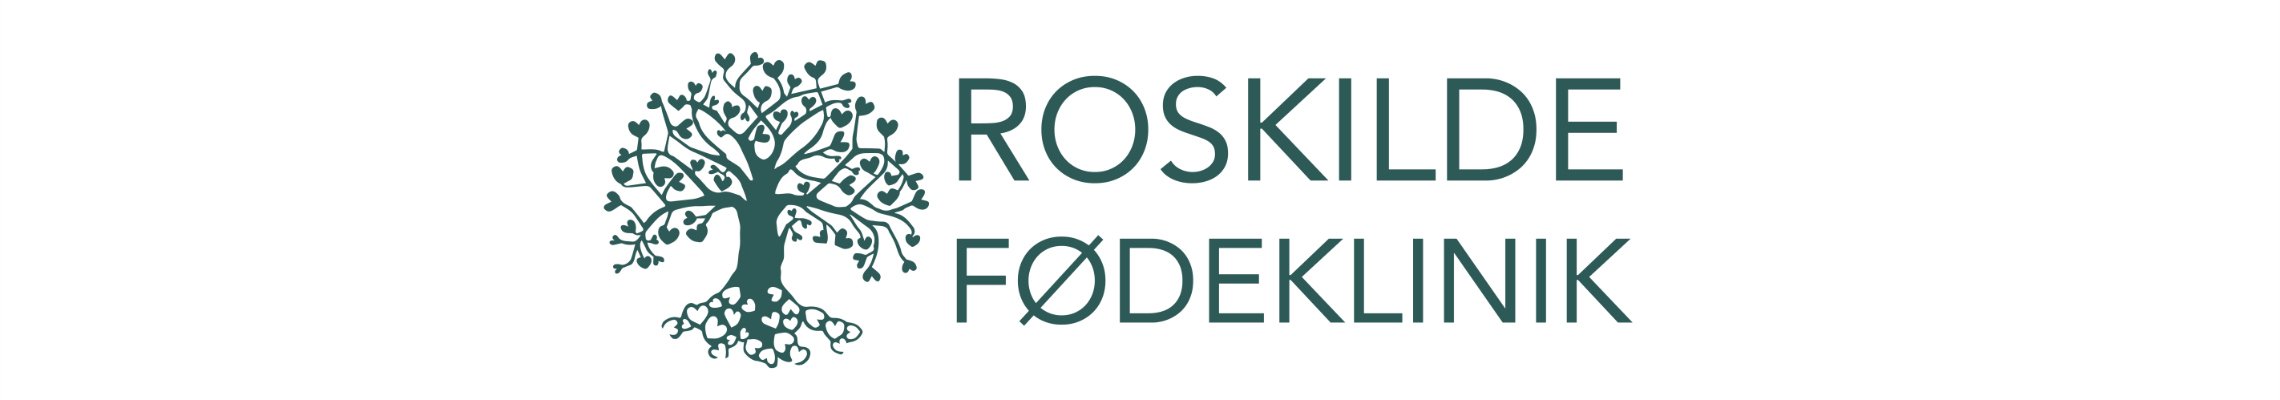 Roskilde Fødeklinik